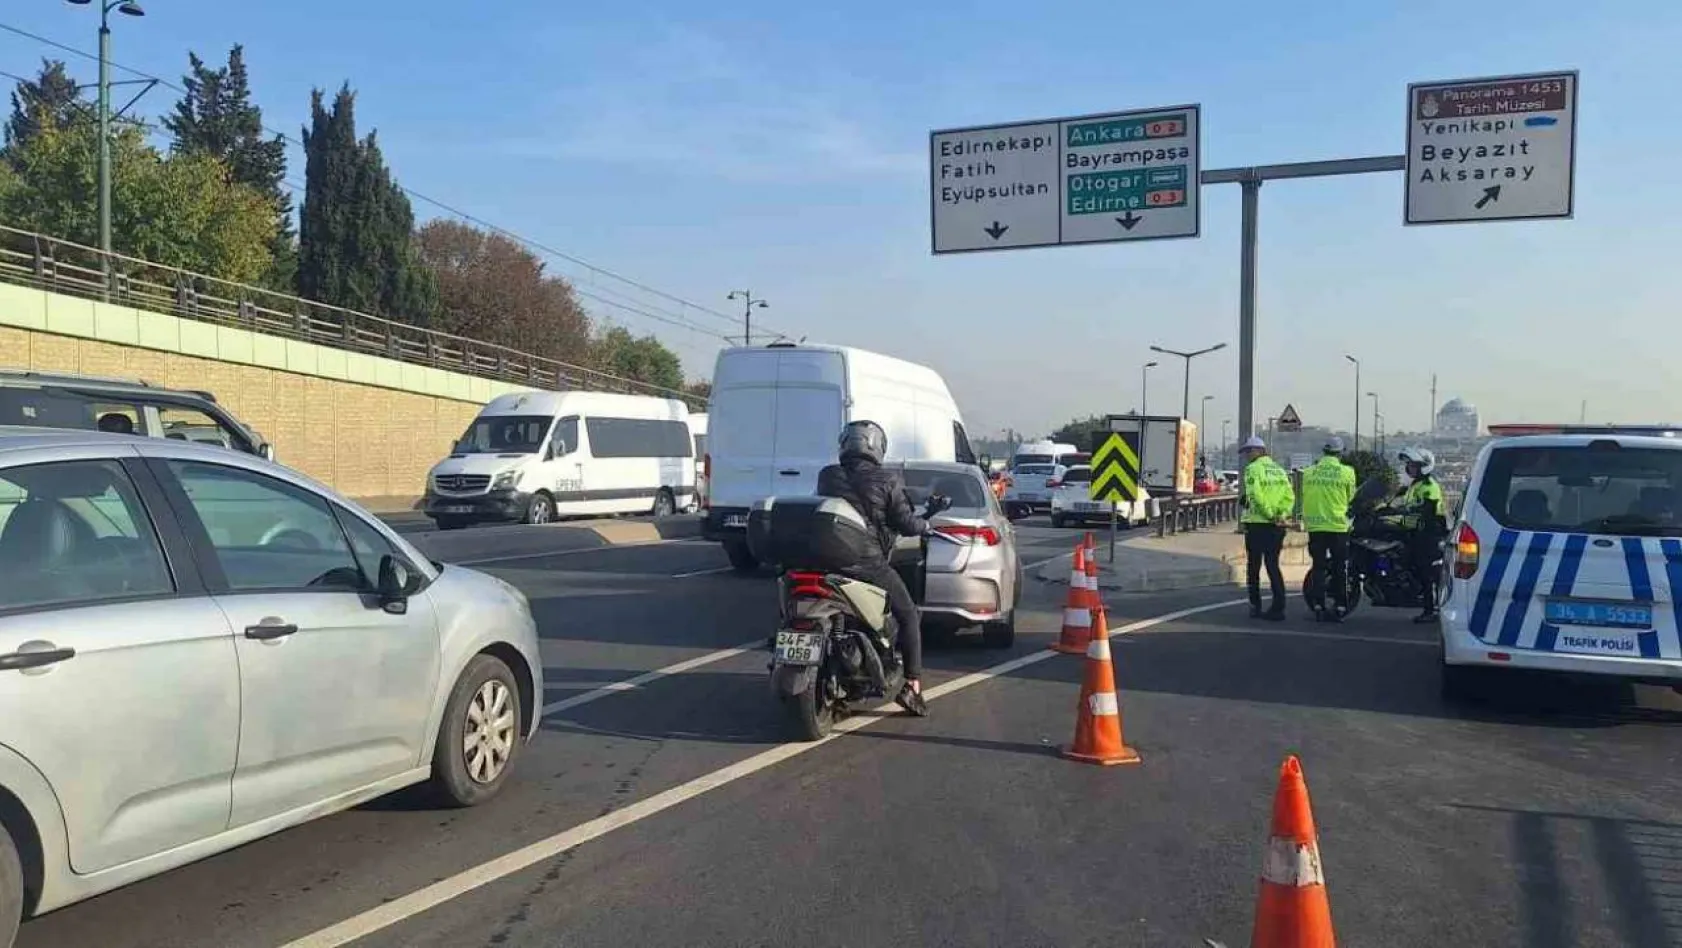 29 Ekim Cumhuriyet Bayramı provaları nedeniyle Vatan Caddesi trafiğe kapatıldı